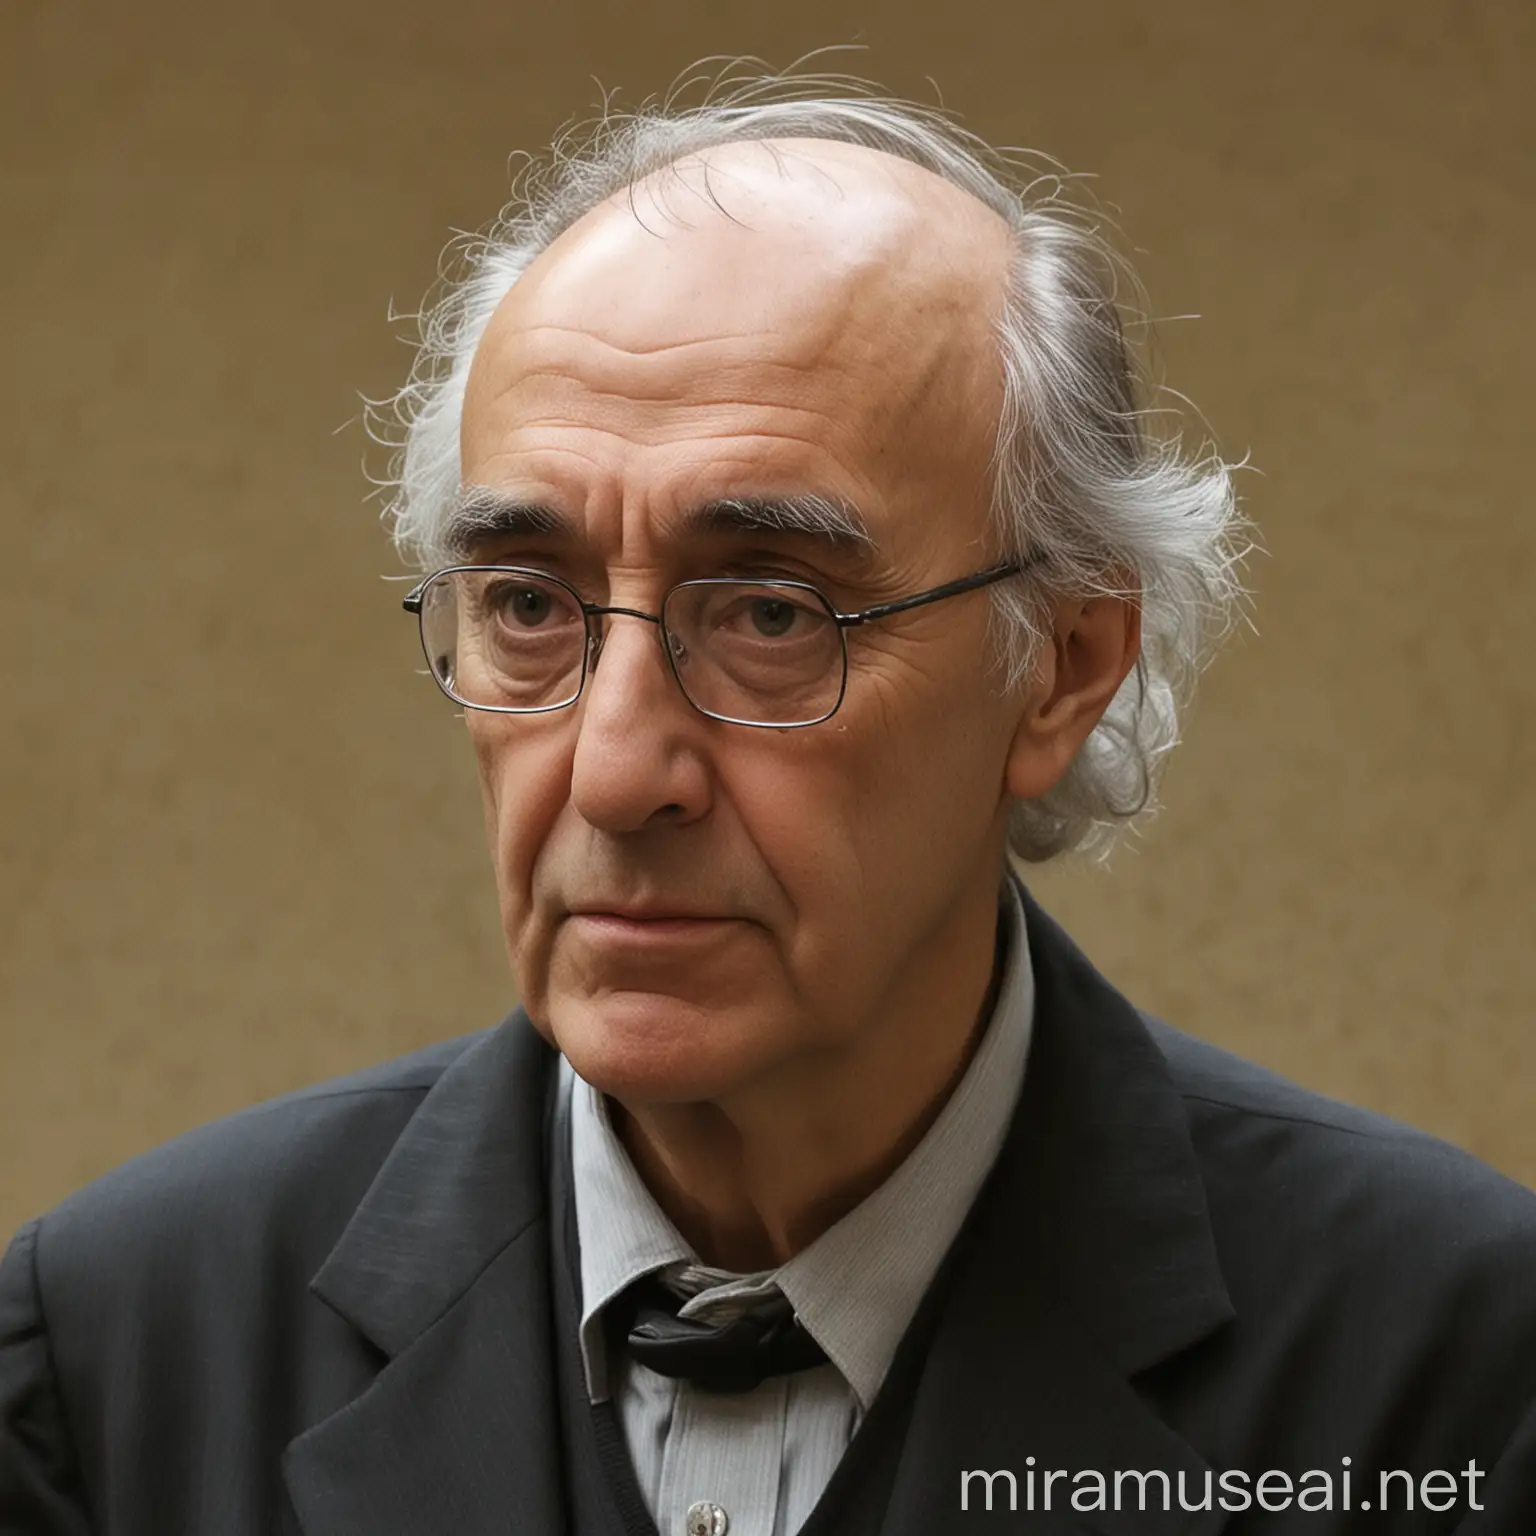 imagen de José Saramago, escritor portugués recibe premio nobel